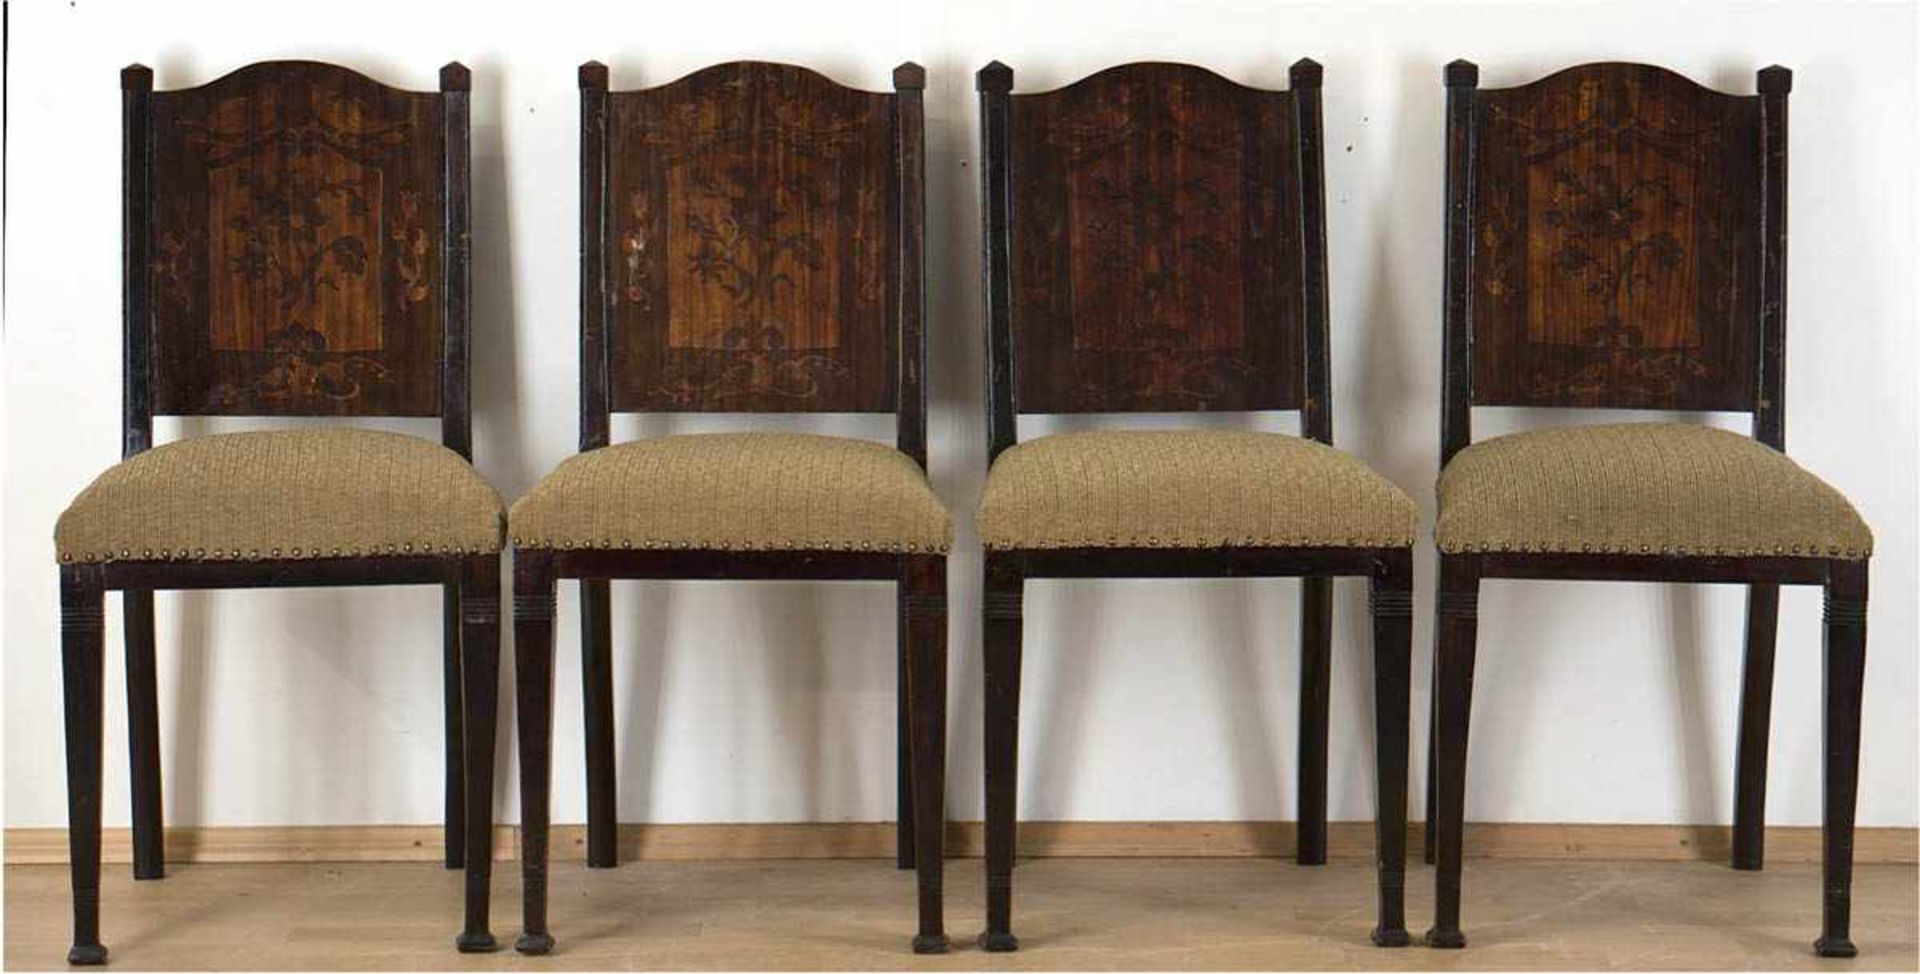 4 Stühle, um 1900, mahagonifarben, intarsierte Rückenlehne mit Floral- und Vogelmotiven,